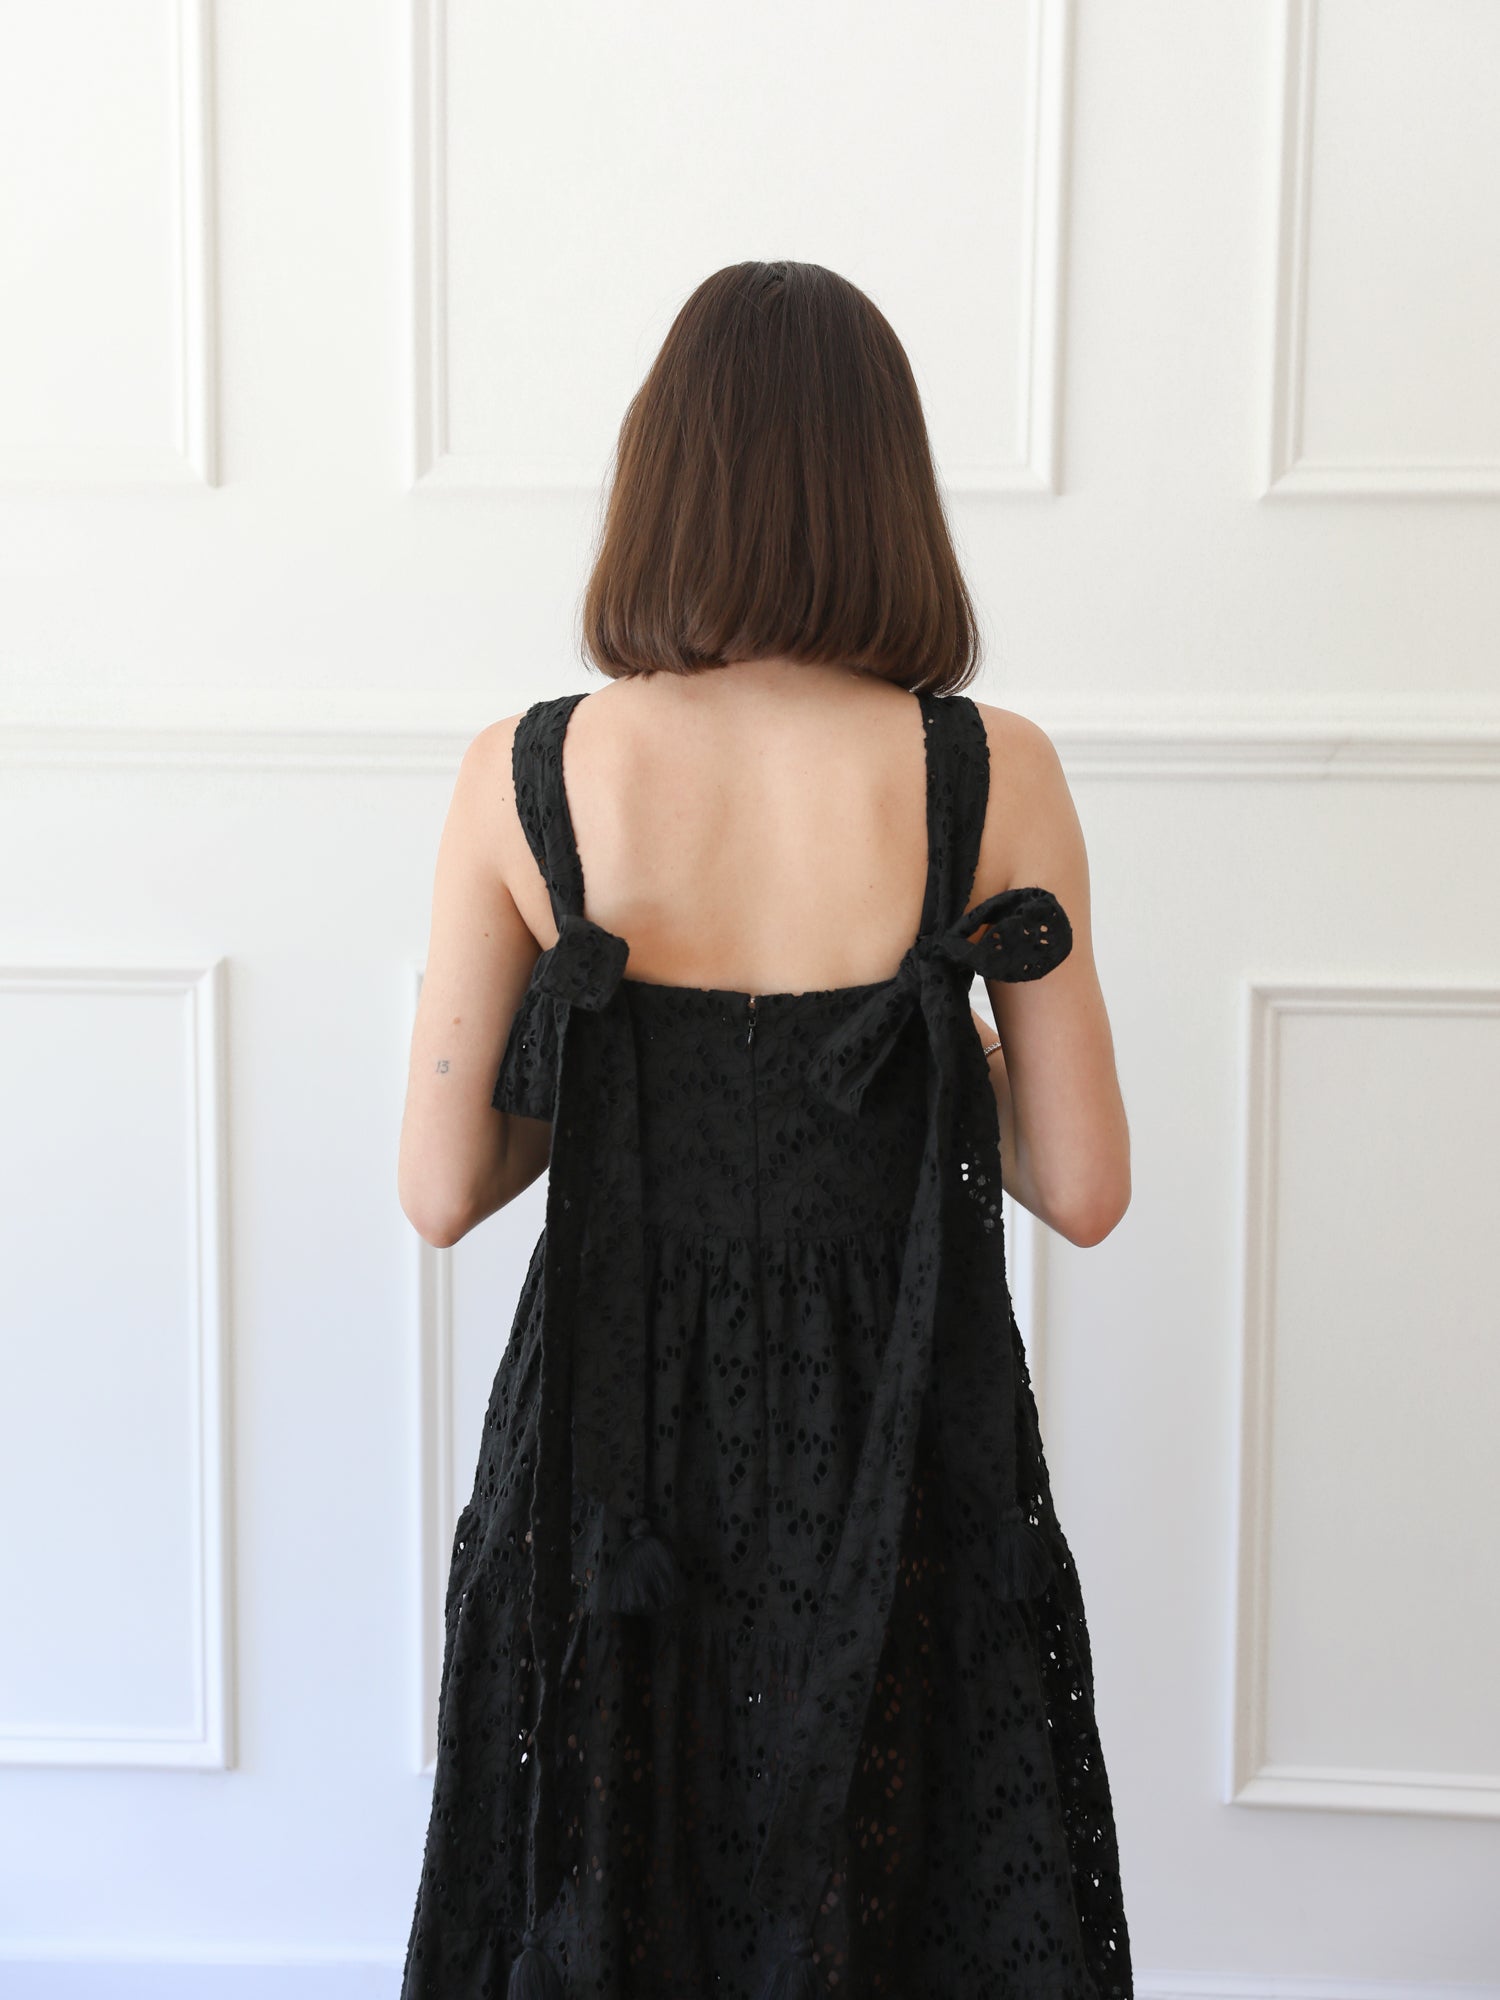 MILLE Clothing Daphne Dress in Black Floral Eyelet